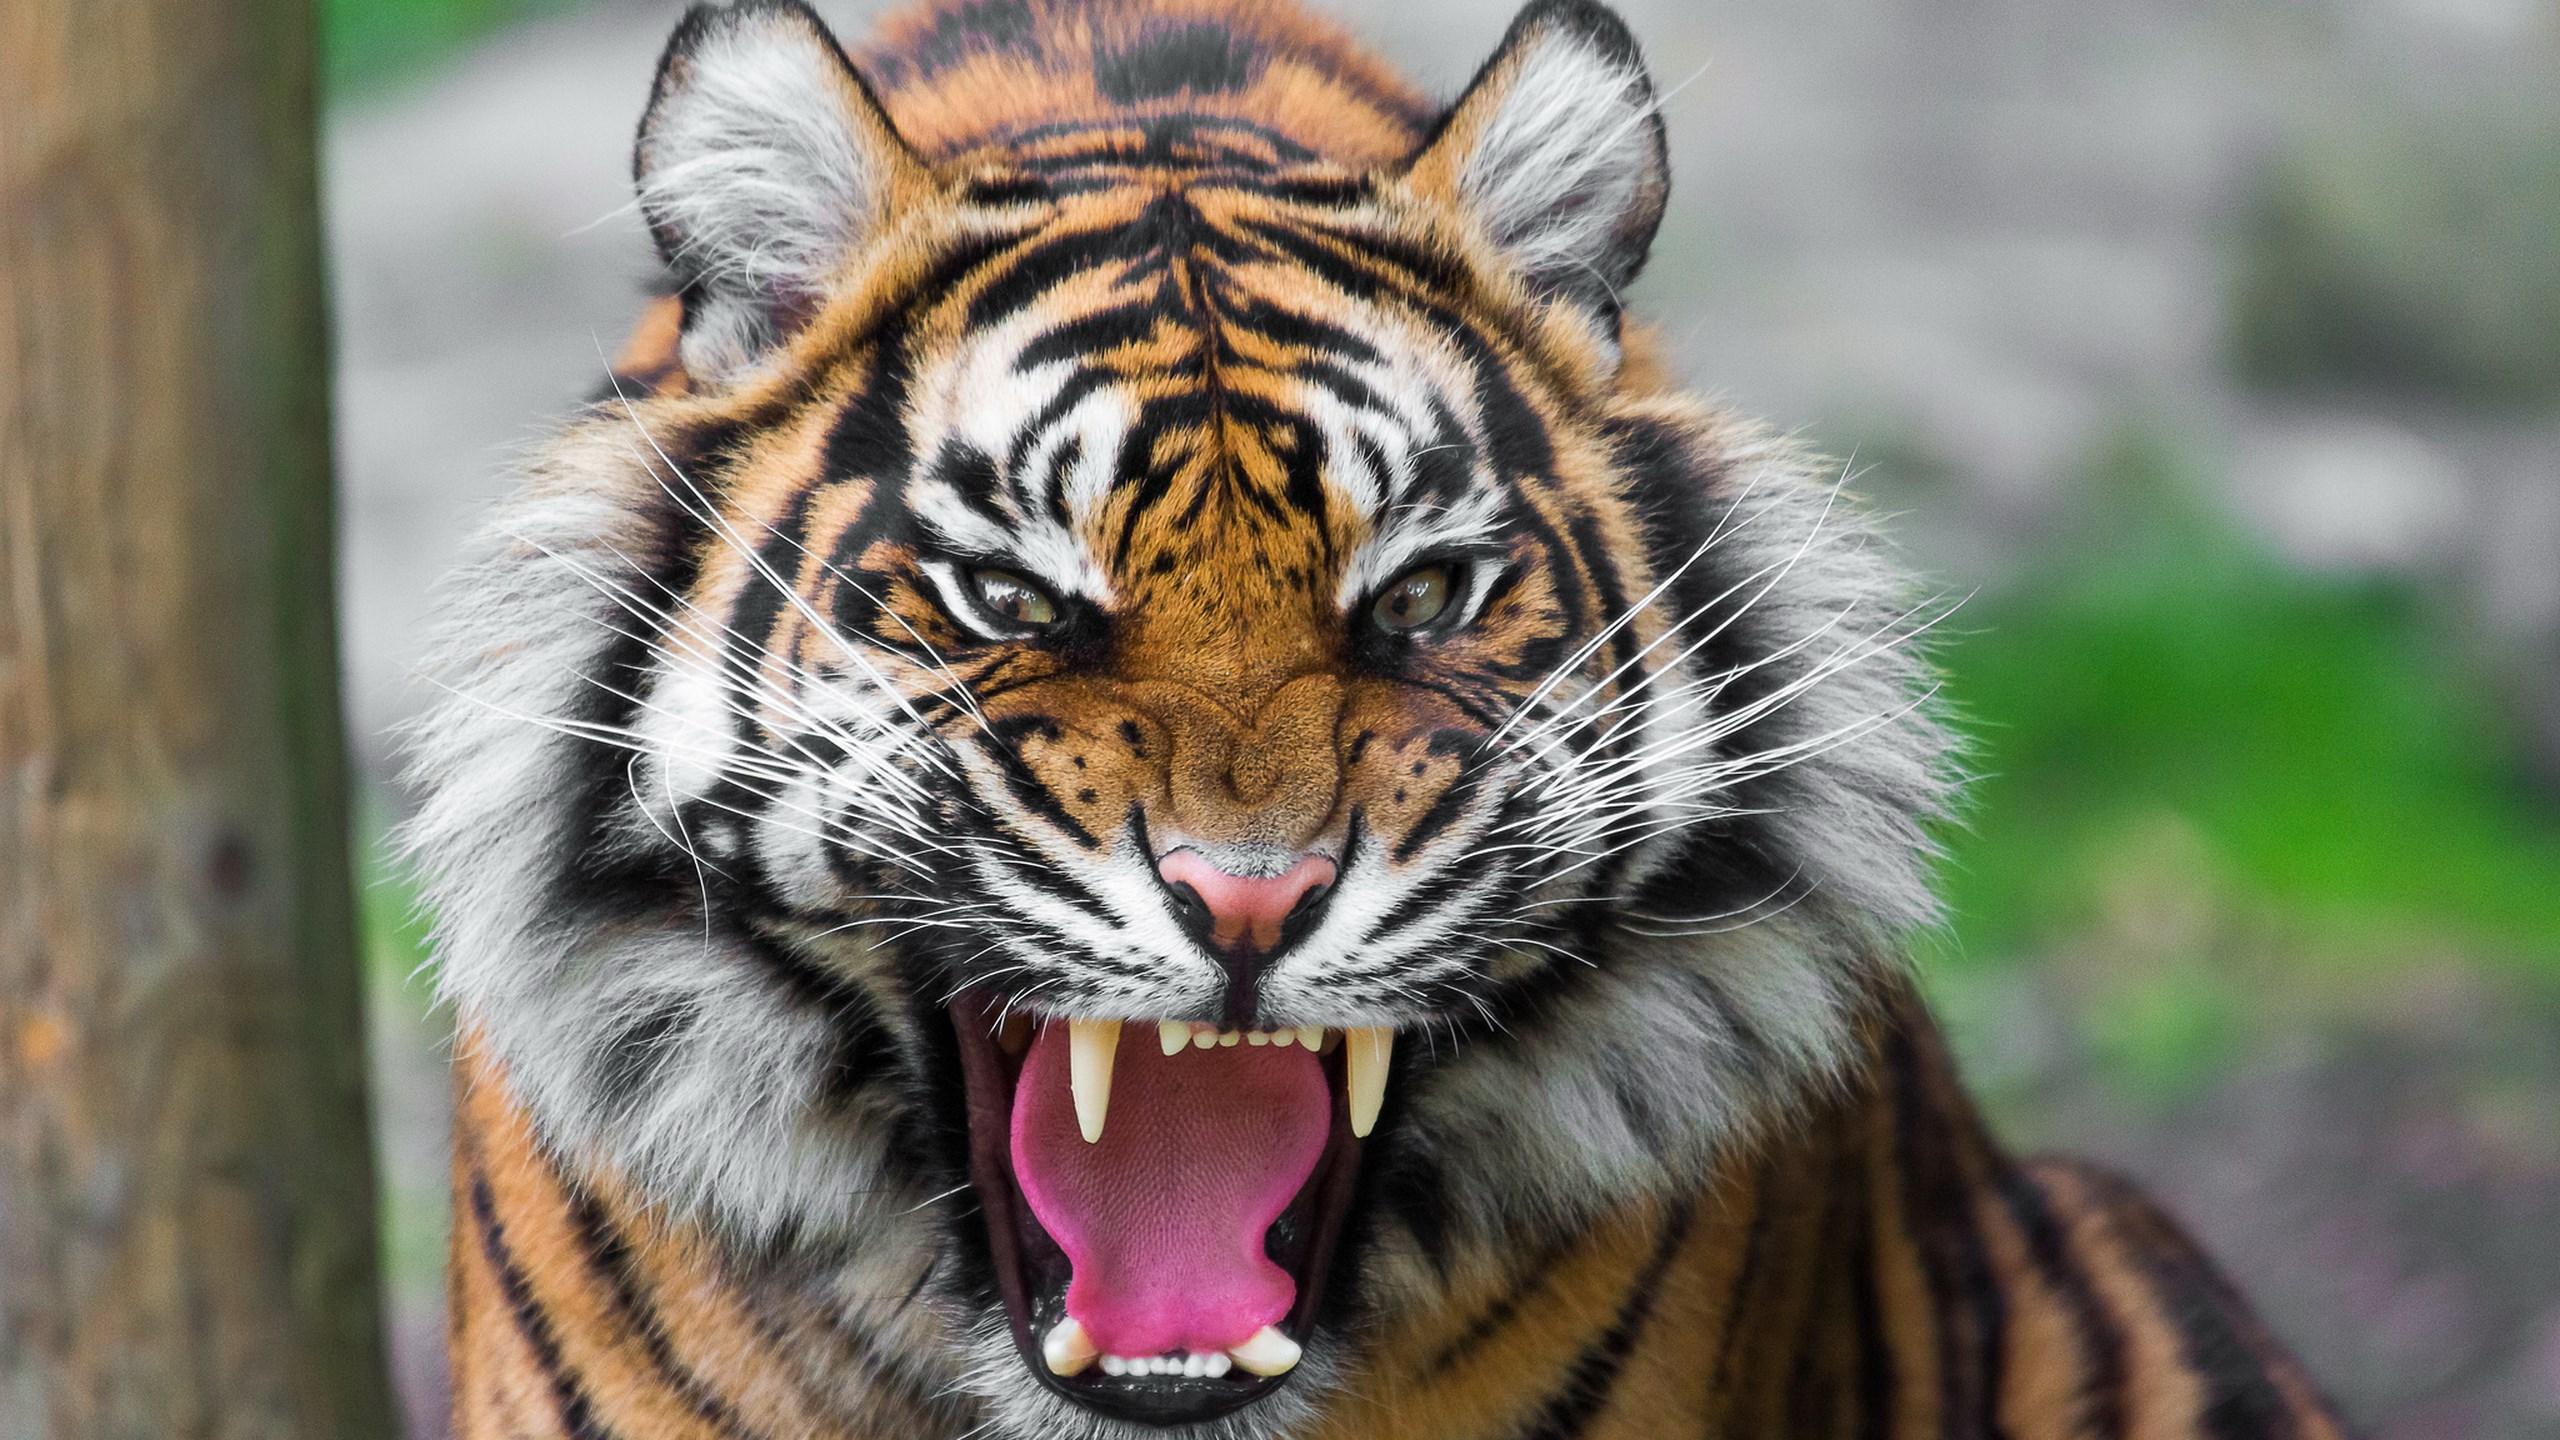 roaring tiger wallpaper HD. Tiger wallpaper 4k, tiger image